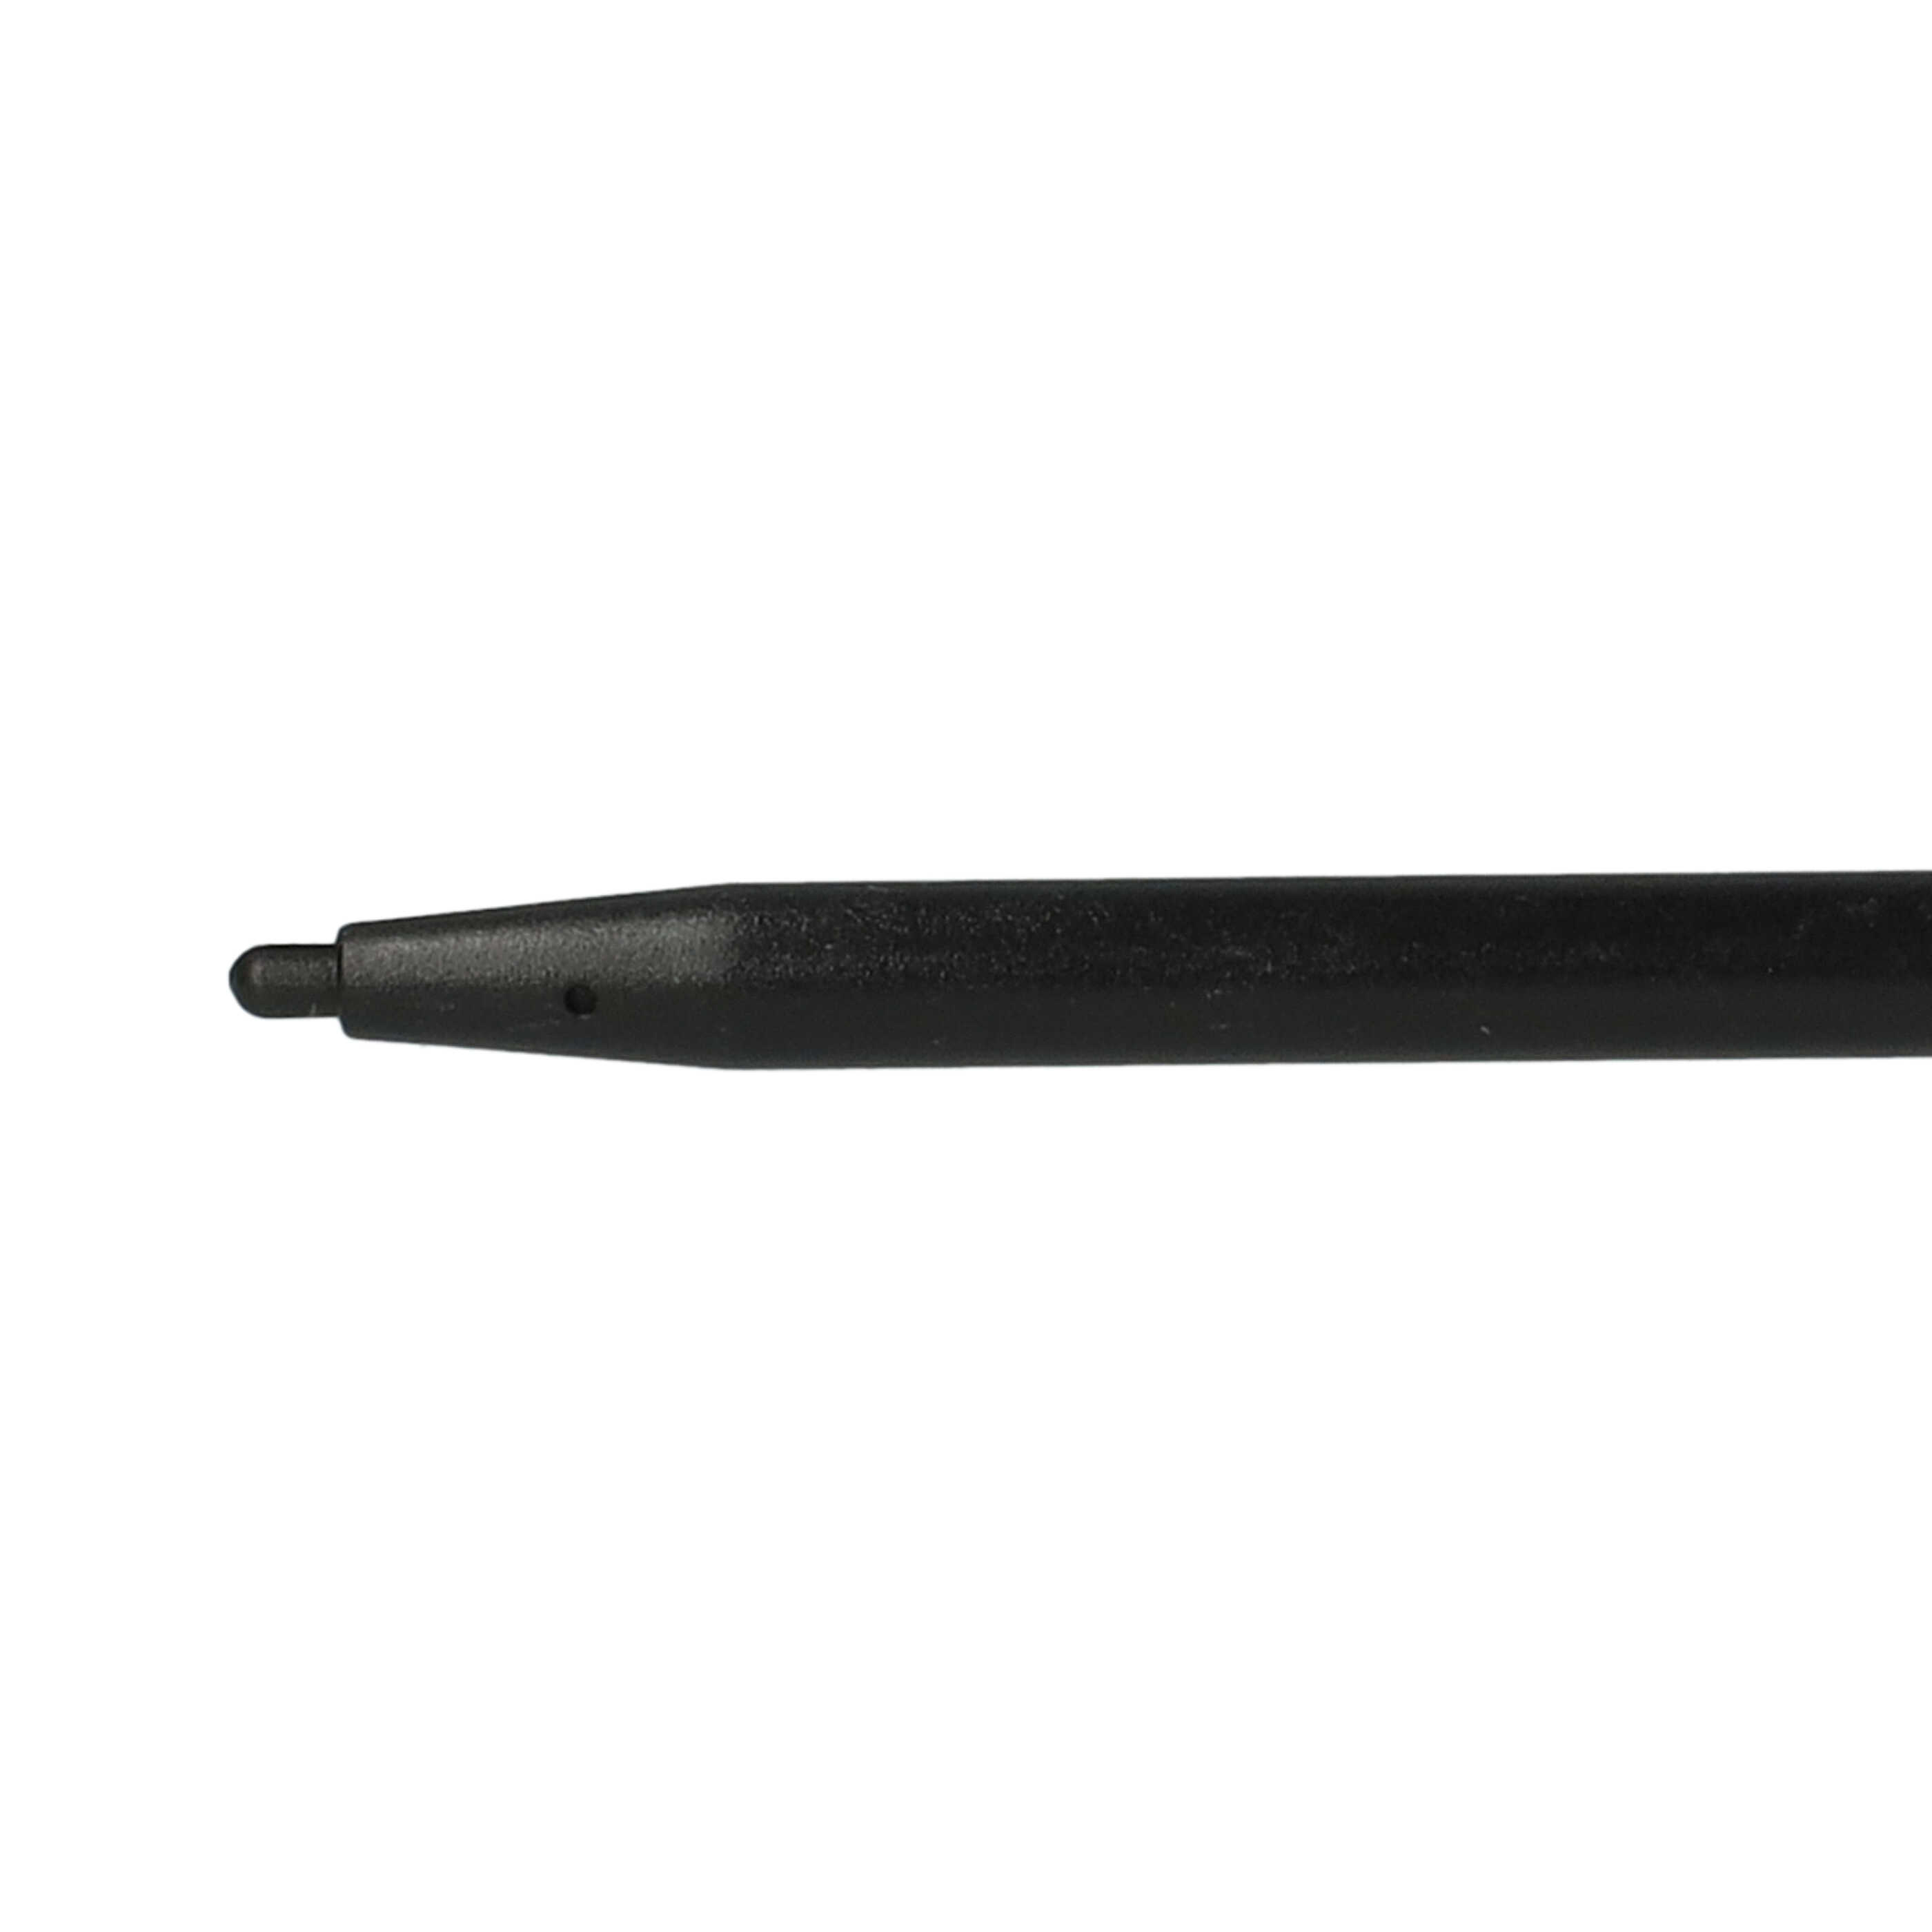 10x Touch Pens suitable for Nintendo DSi, DSi XL, DS Lite Game Console - black